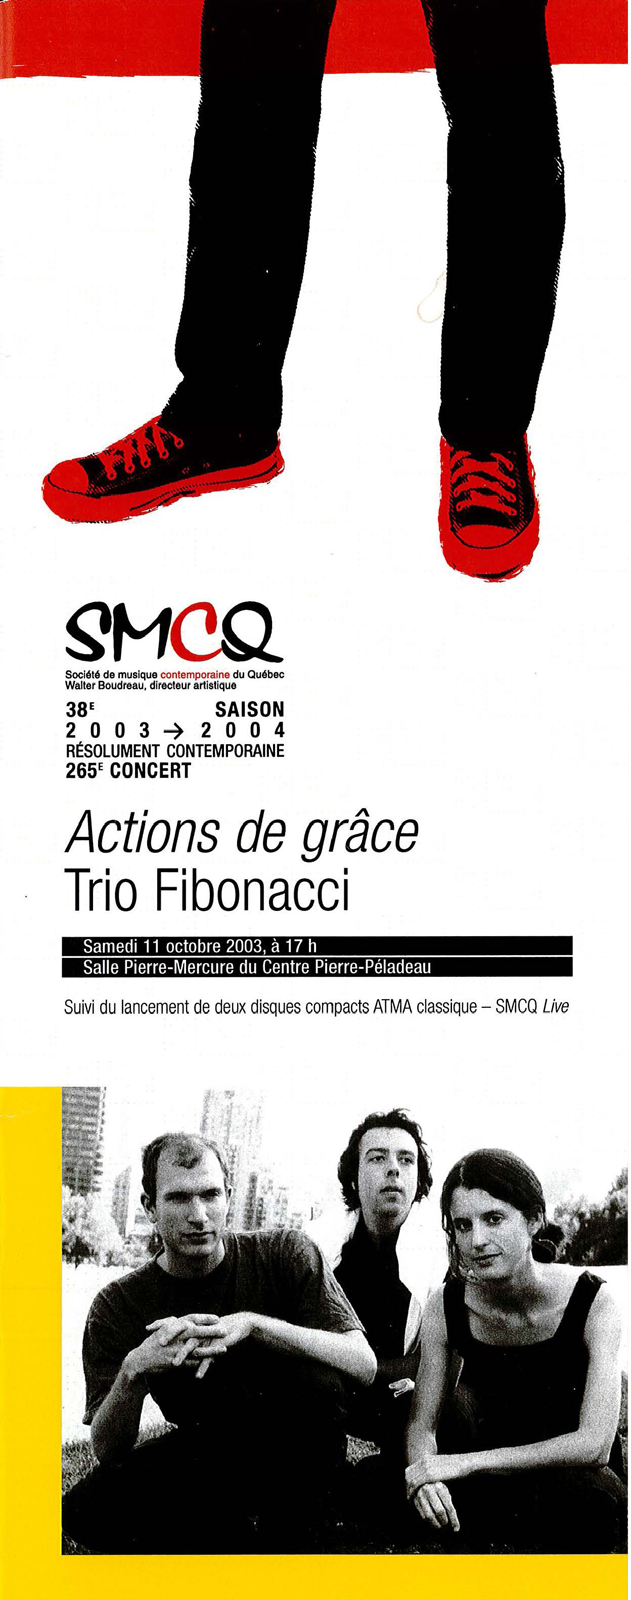 Figure 9 : SMCQ, Programme du 265<sup>e</sup> concert, 11 octobre 2003, 1<sup>re</sup> de couverture, 10, 7 cm x 27,7 cm. Graphisme : Elastik / Photo : Trio Fibonacci (Gabriel Prynn, André Ristic, Julie-Anne Derome)